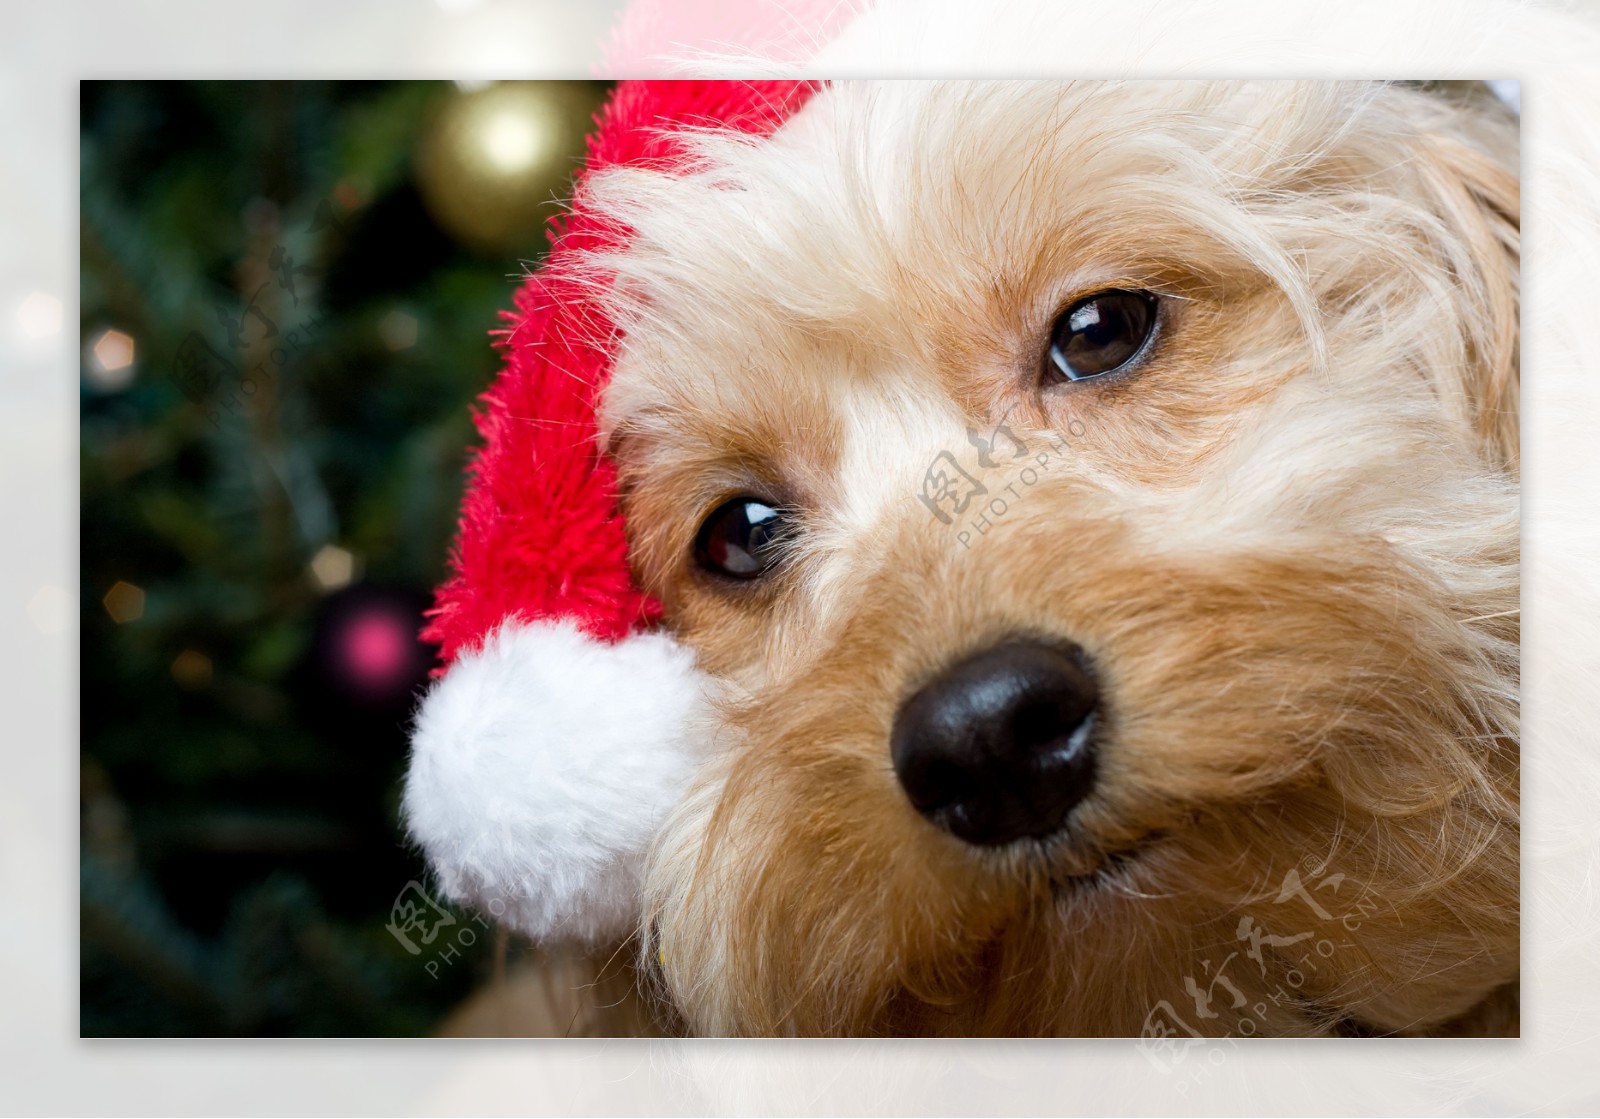 戴着圣诞帽的小狗图片